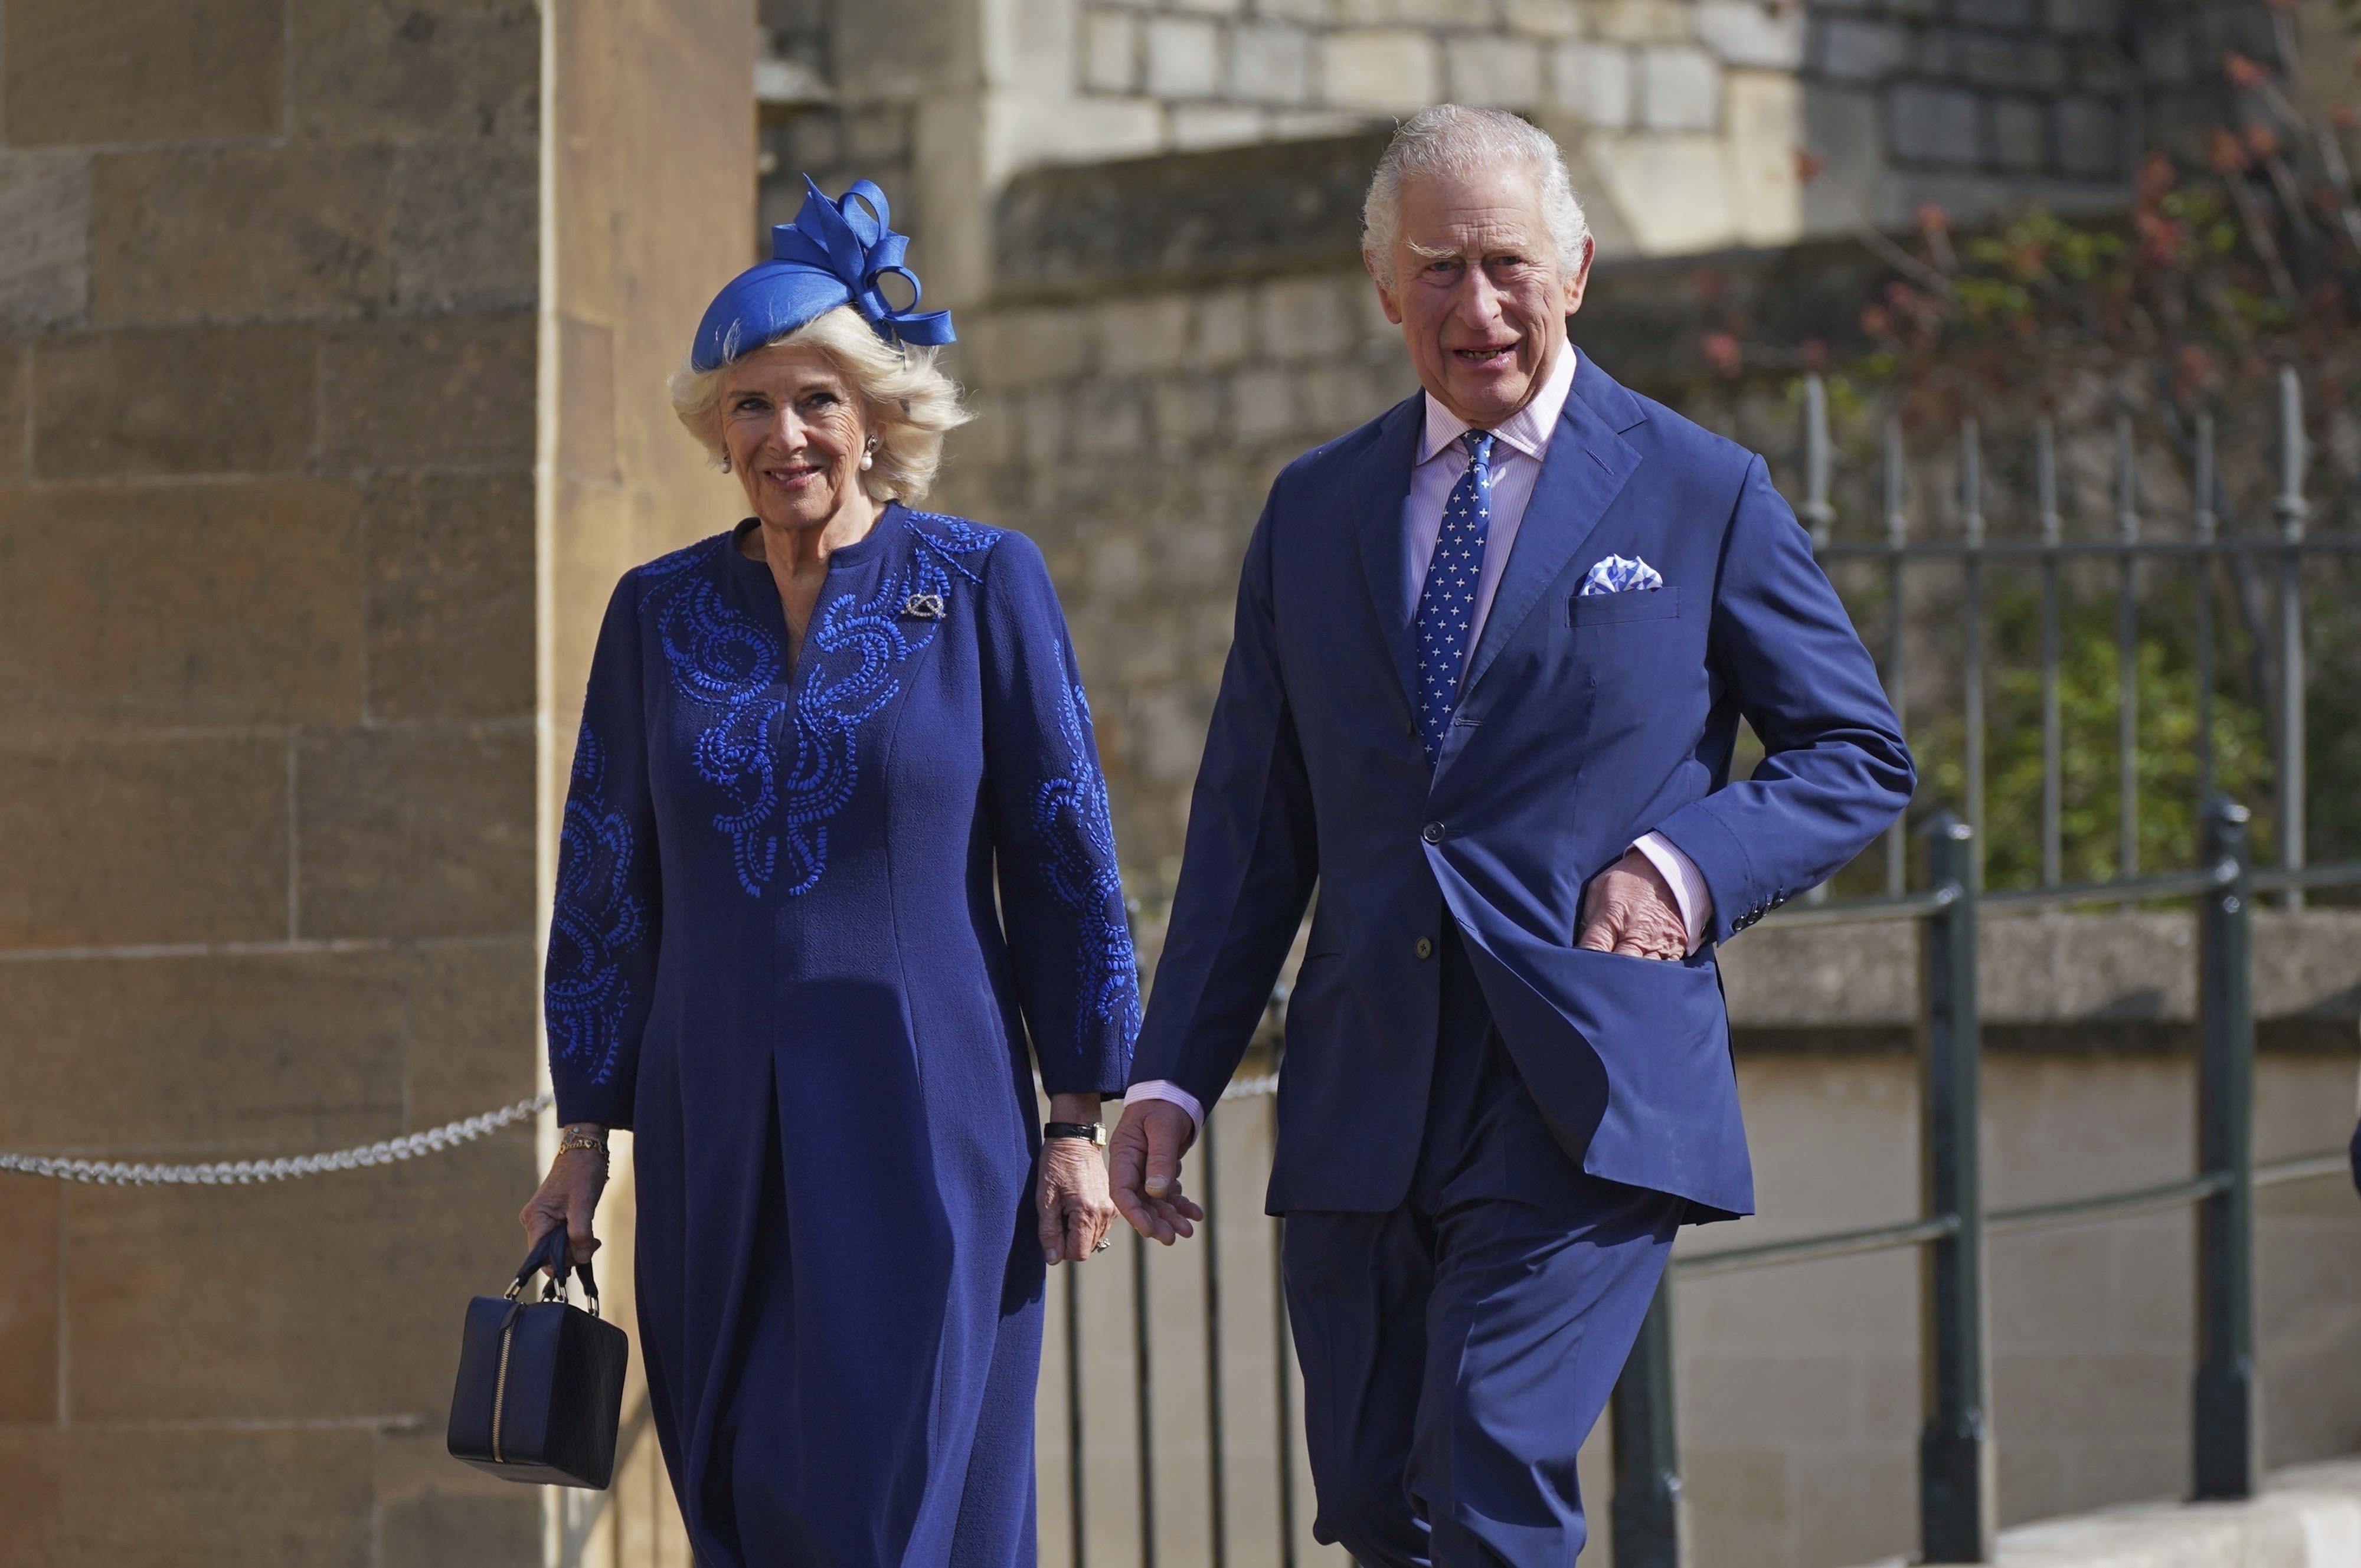 El Palacio de Buckingham reveló nuevos detalles de la ceremonia de coronación del rey Carlos III